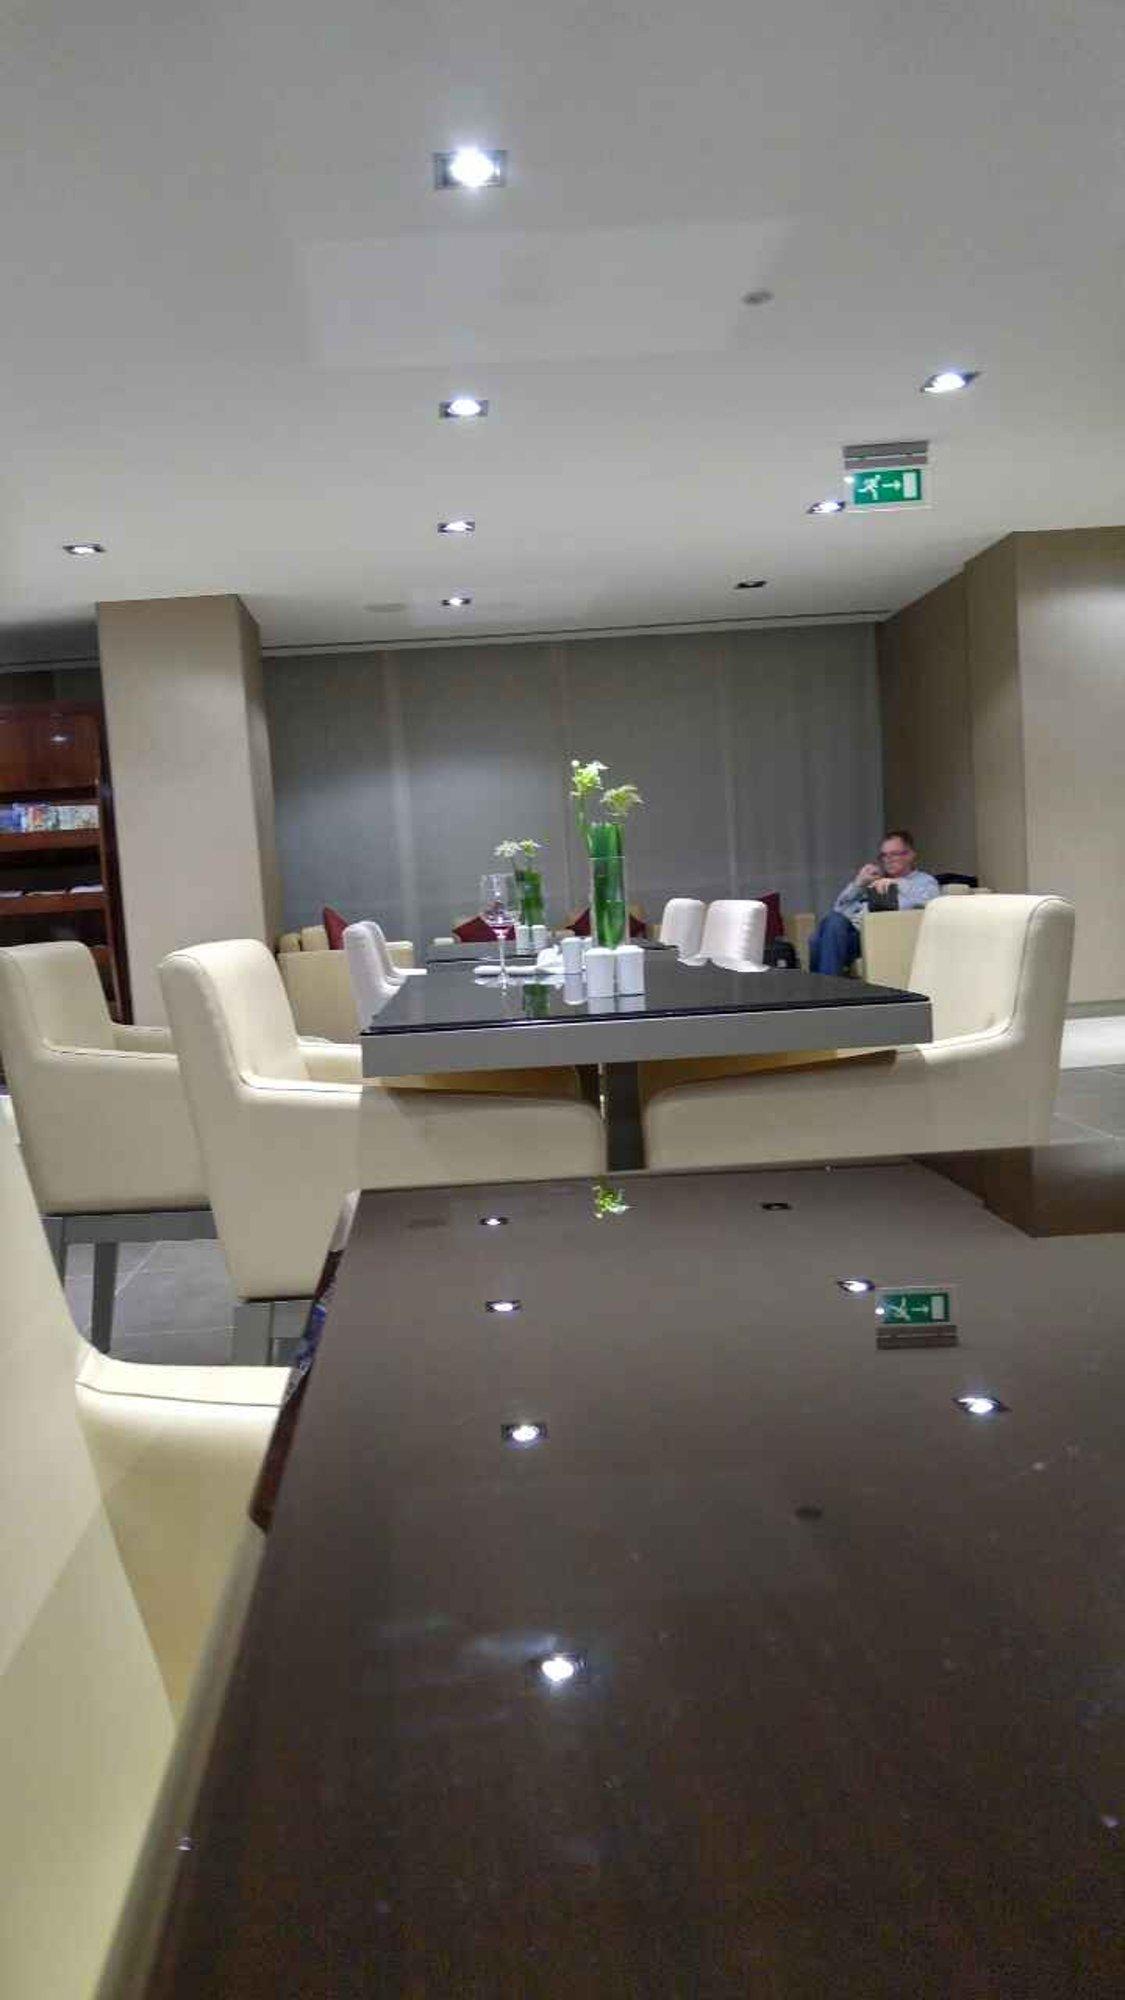 The Emirates Lounge image 2 of 5